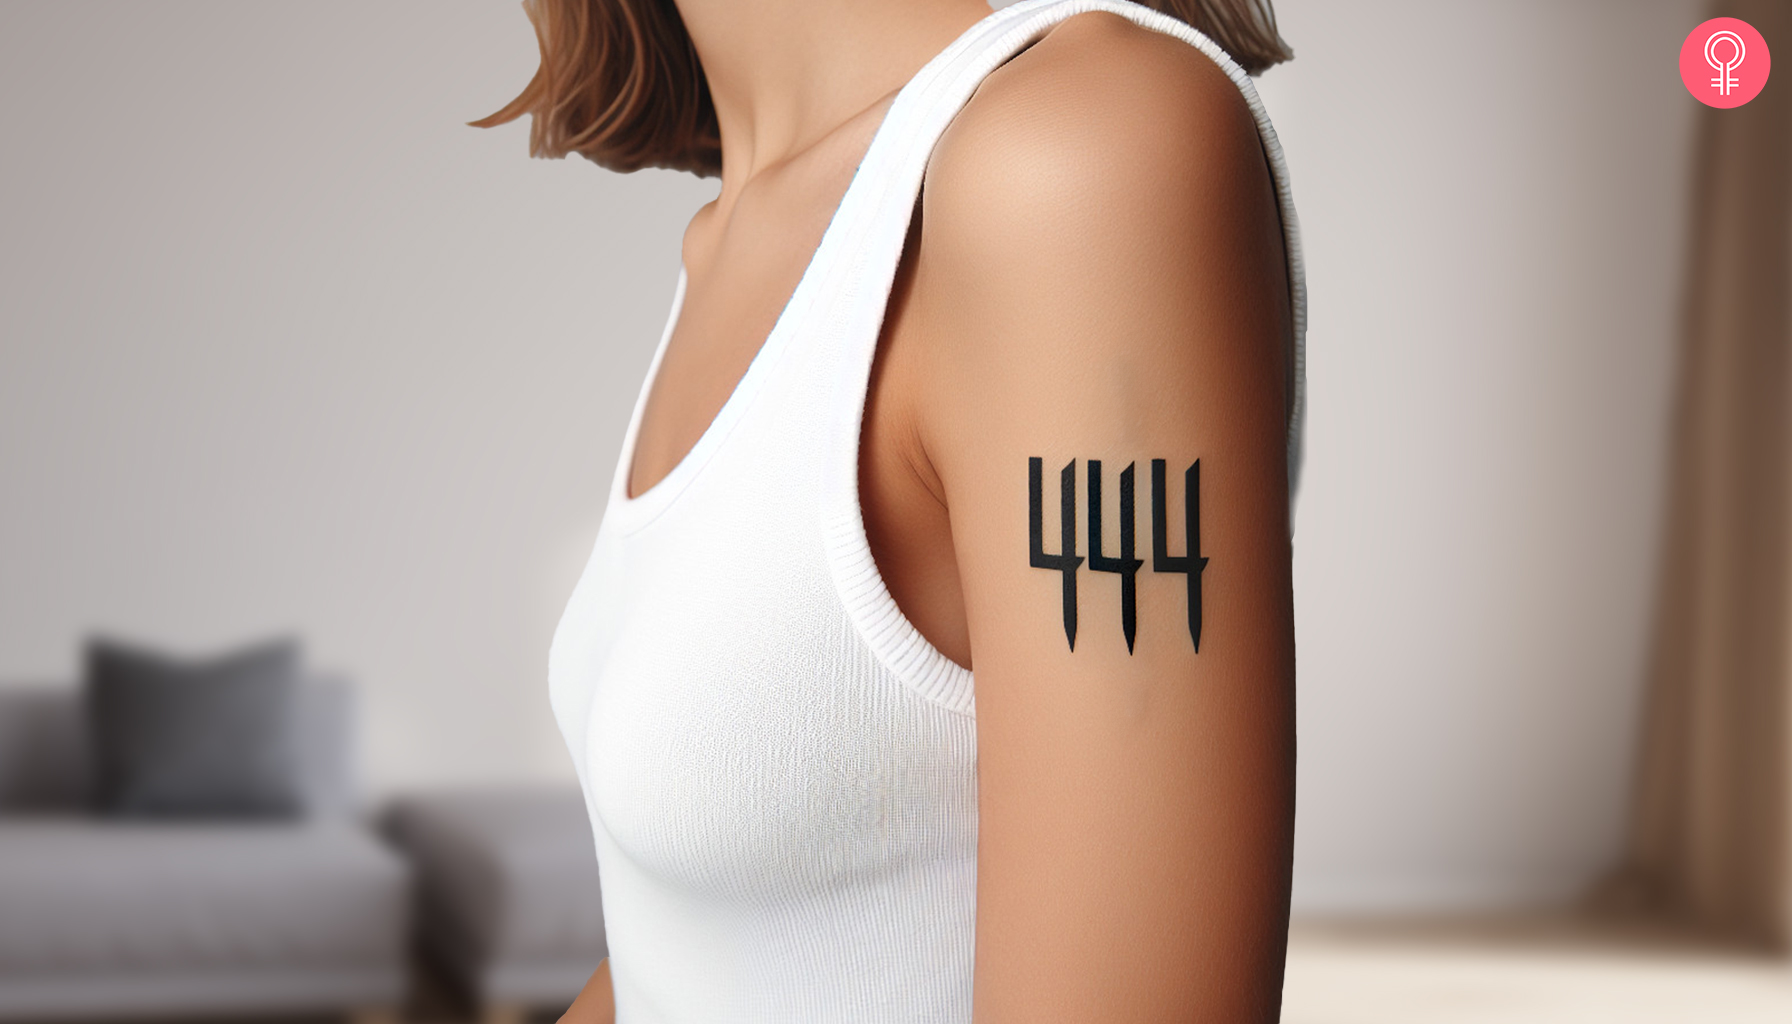 444 Engelszahl Tattoo auf dem Arm einer Frau